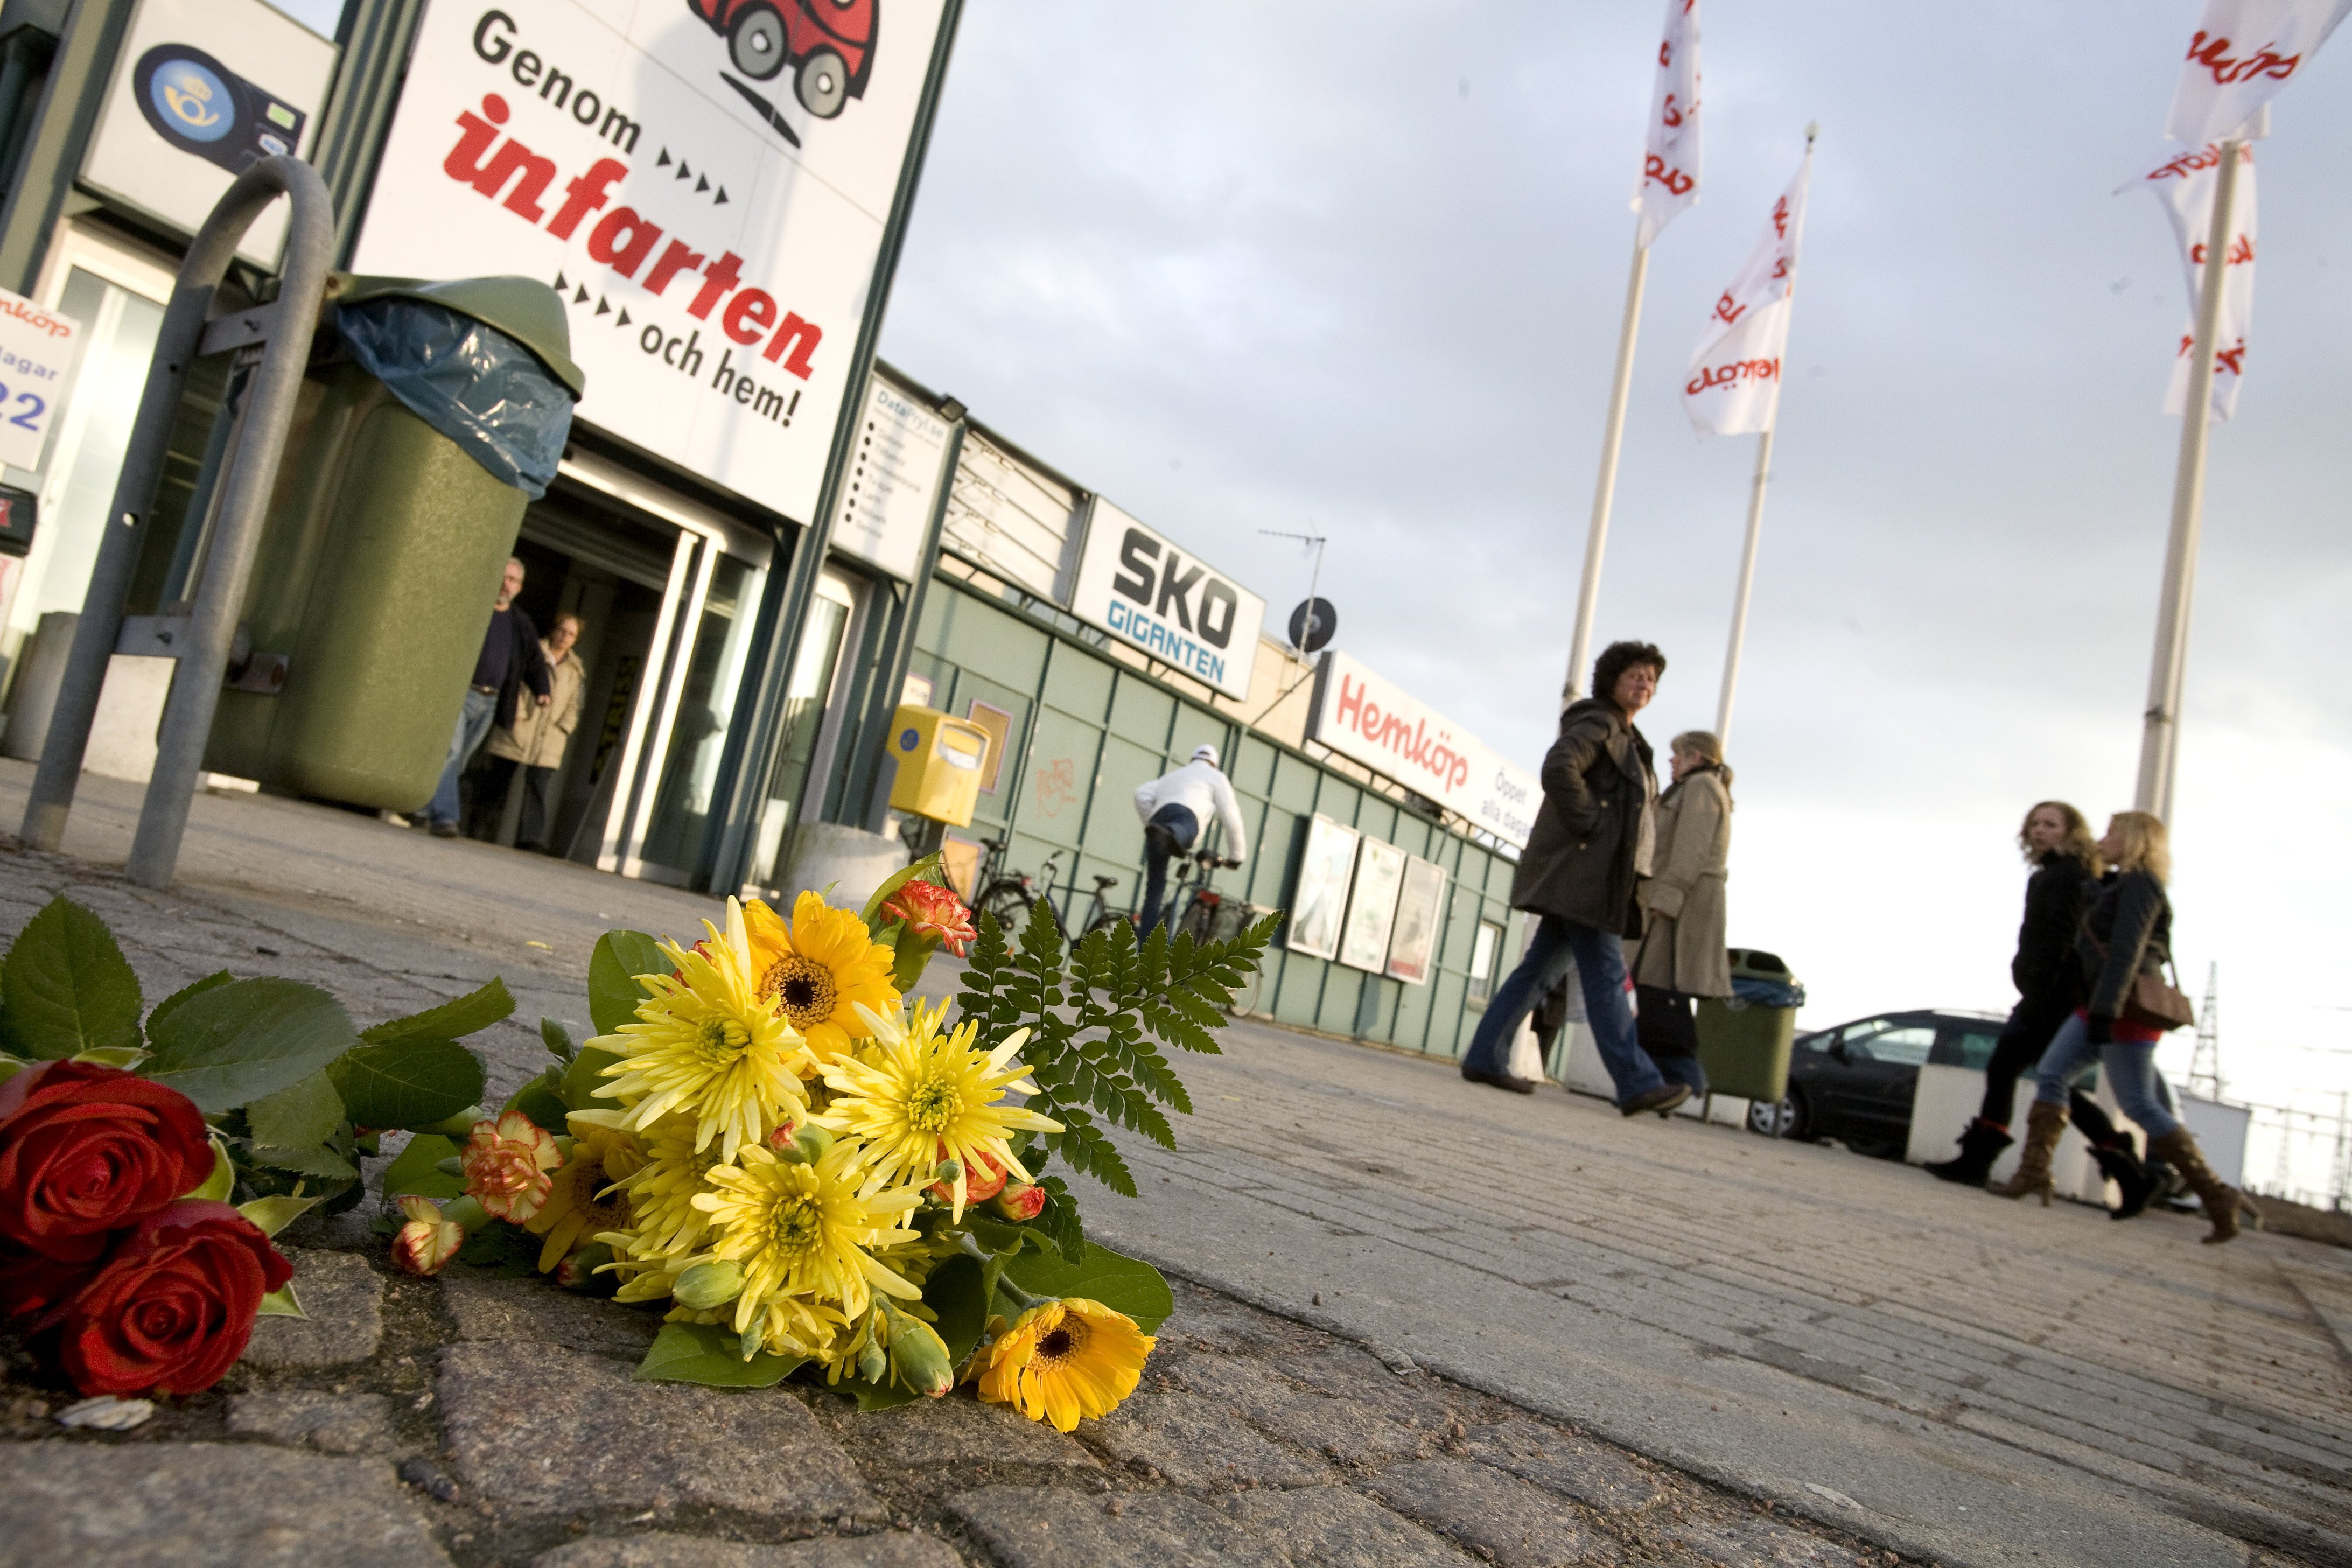 30/3/2010. 78-åriga Inger misshandlas brutalt till döds på en parkeringsplats i Landskrona. 23-åringen som knuffat henne hävdar att det var en olycka, men döms så småningom till två års fängelse.